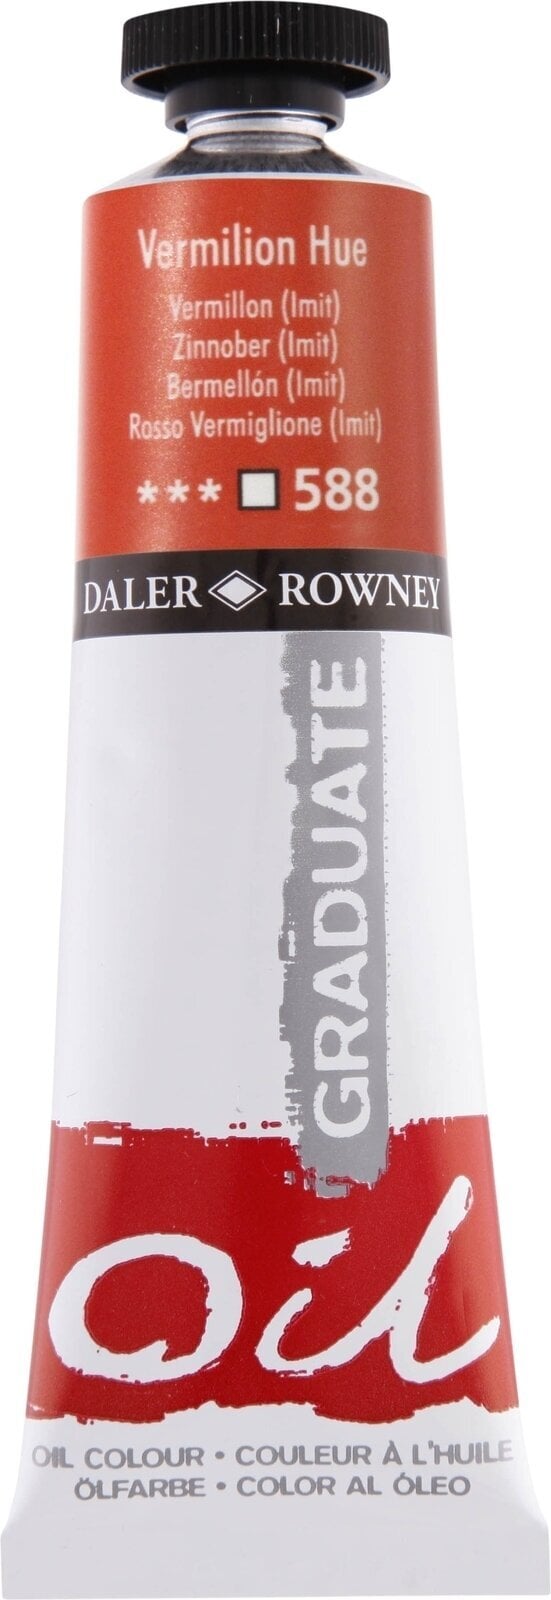 Oil colour Daler Rowney Graduate Oil Paint Vermilion Hue 38 ml 1 pc